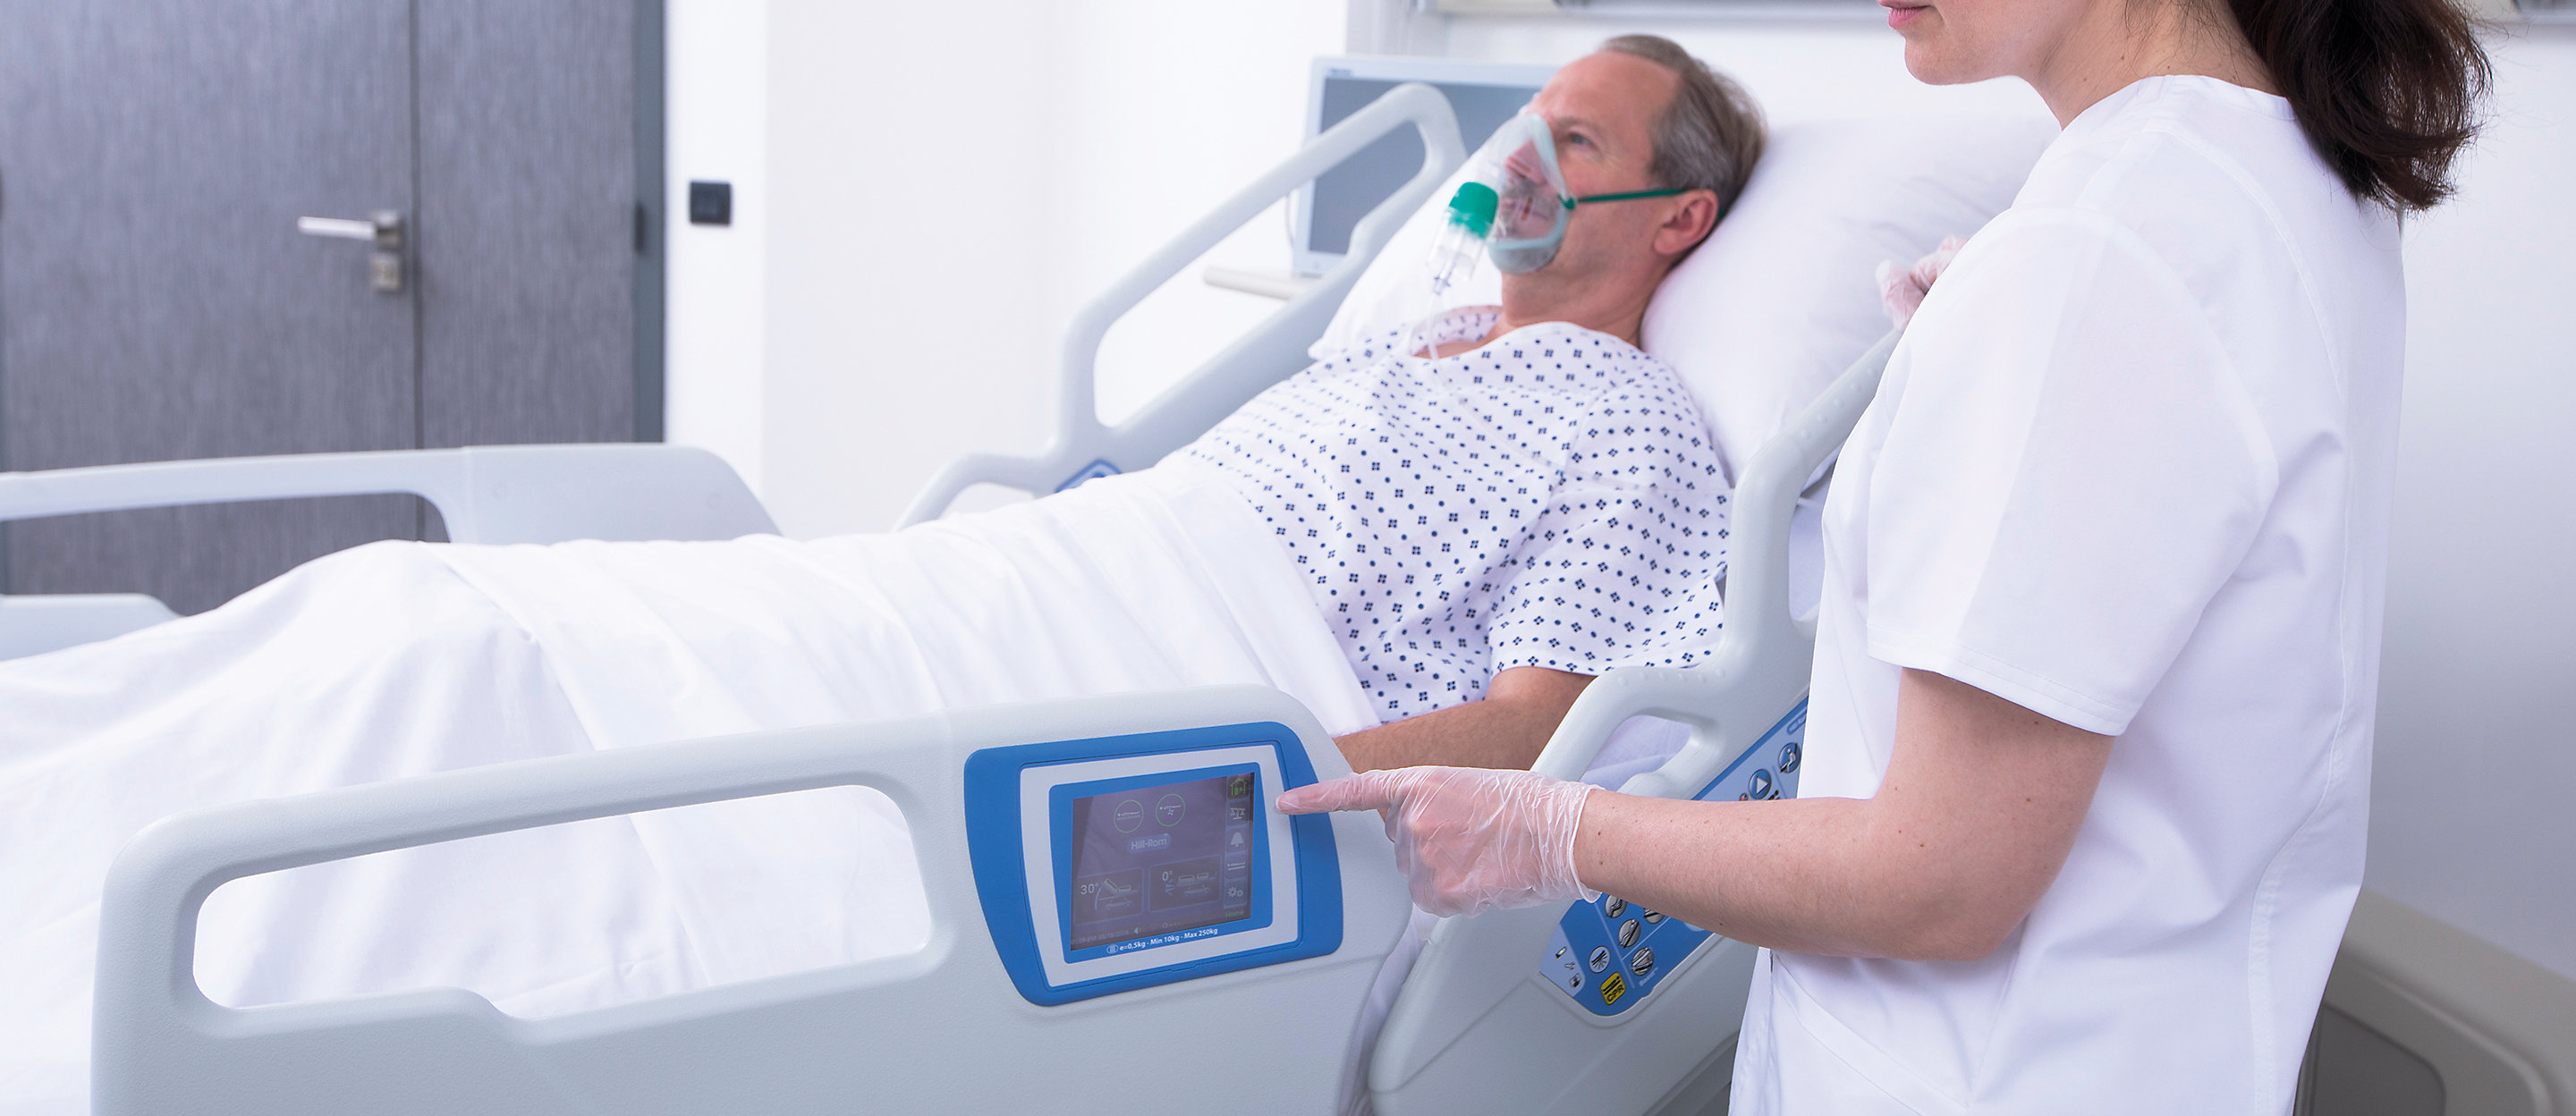 Ein Arzt tippt auf den Touchscreen des Hillrom 900 Accella Smart Bed